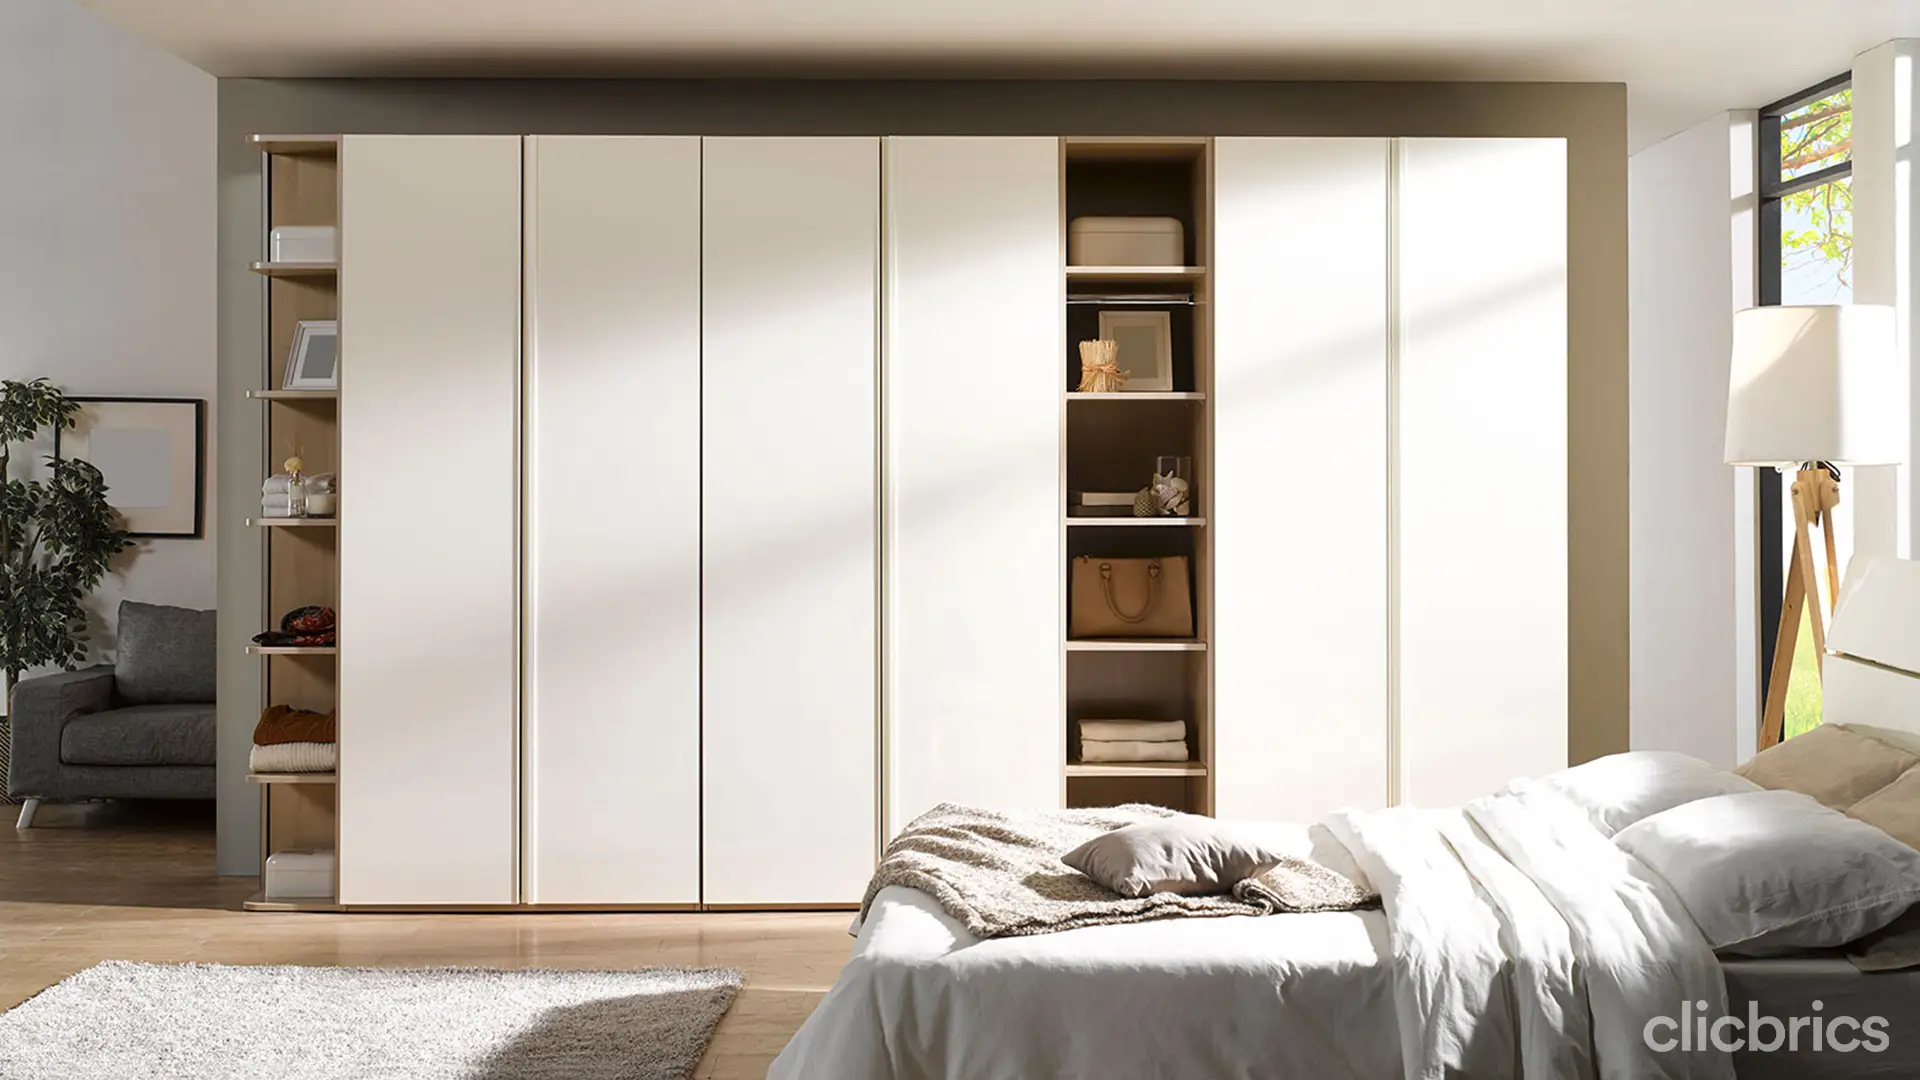  1669717795913 Wooden Cupboard Design For Bedroom.webp